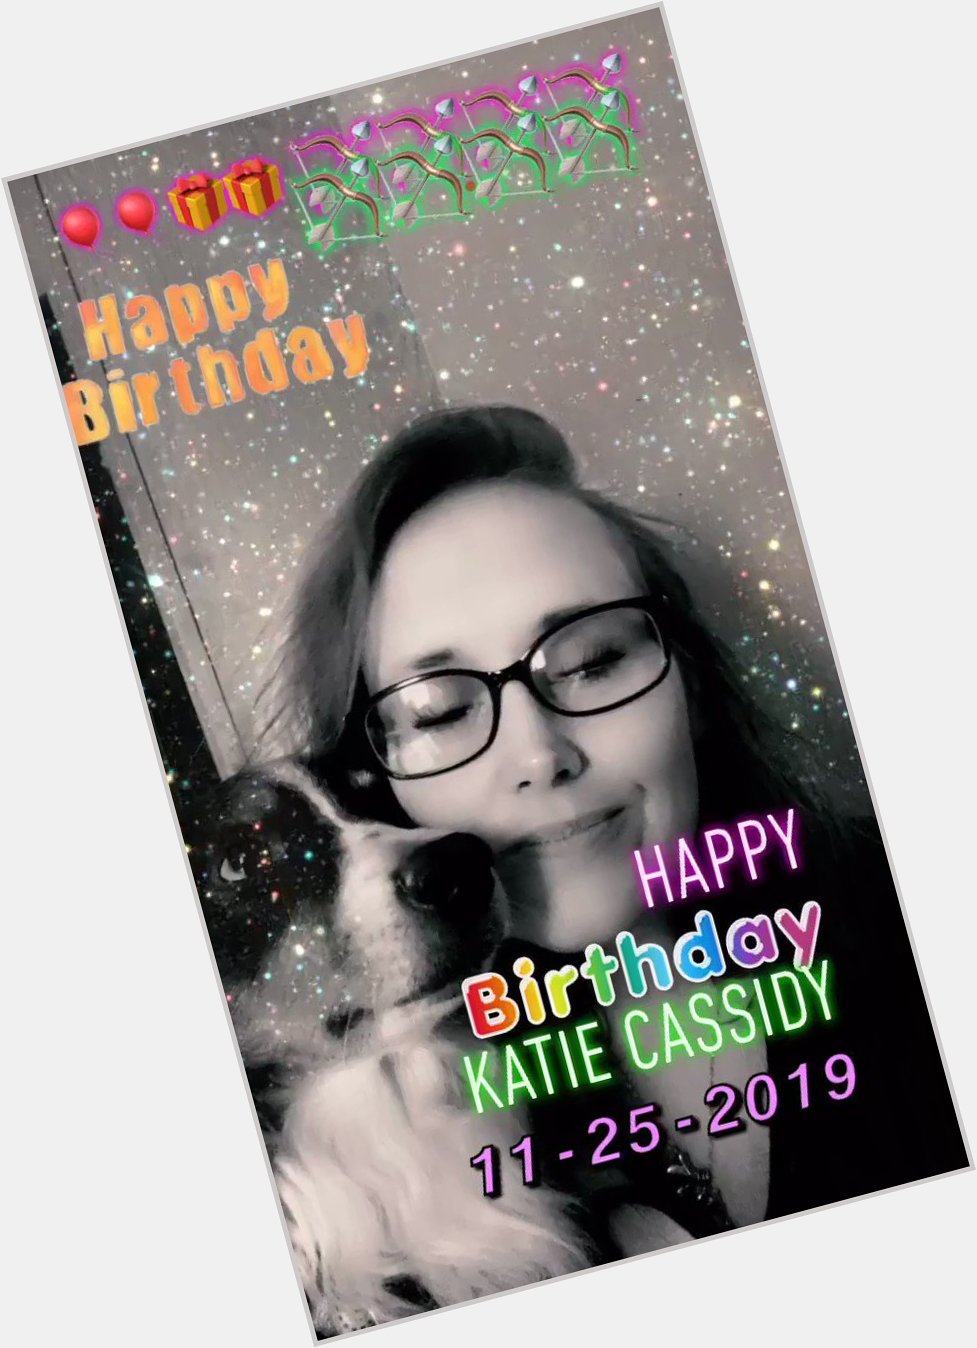  happy birthday Katie Cassidy                                           11-25-2019       